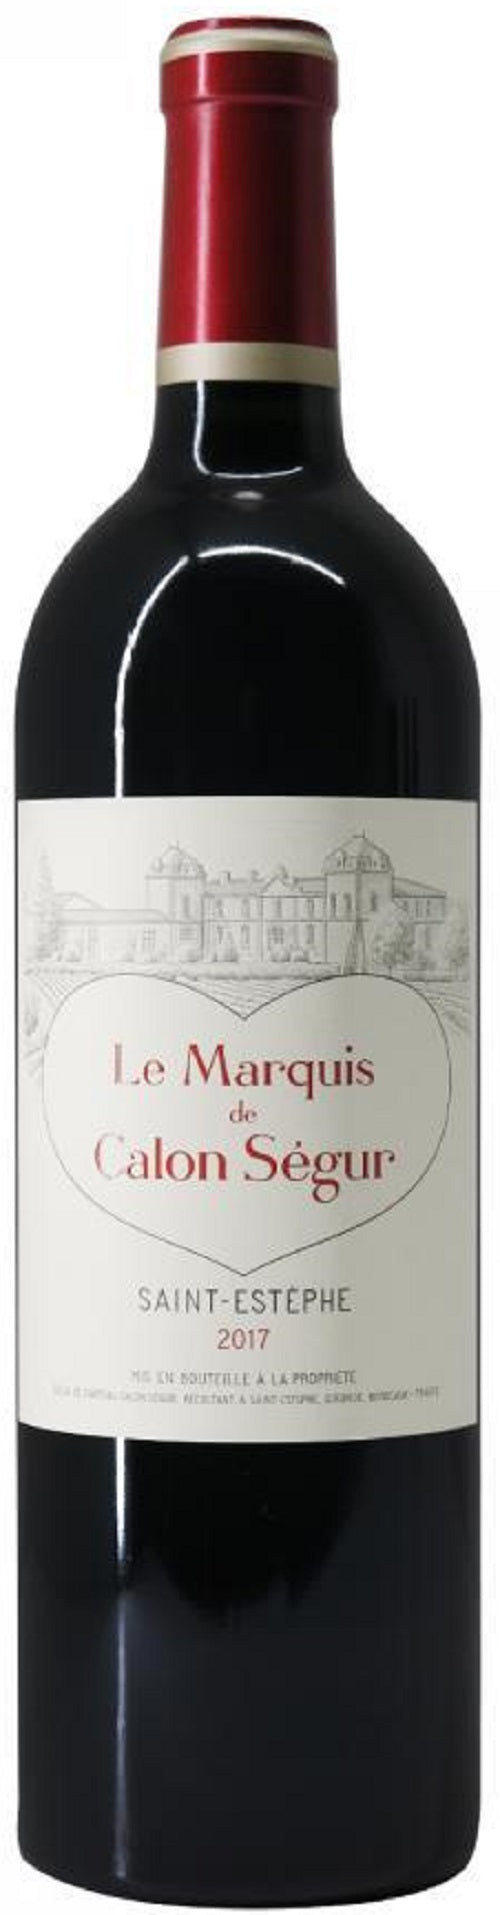 le Marquis de Calon Segur Saint-Estephe 2017